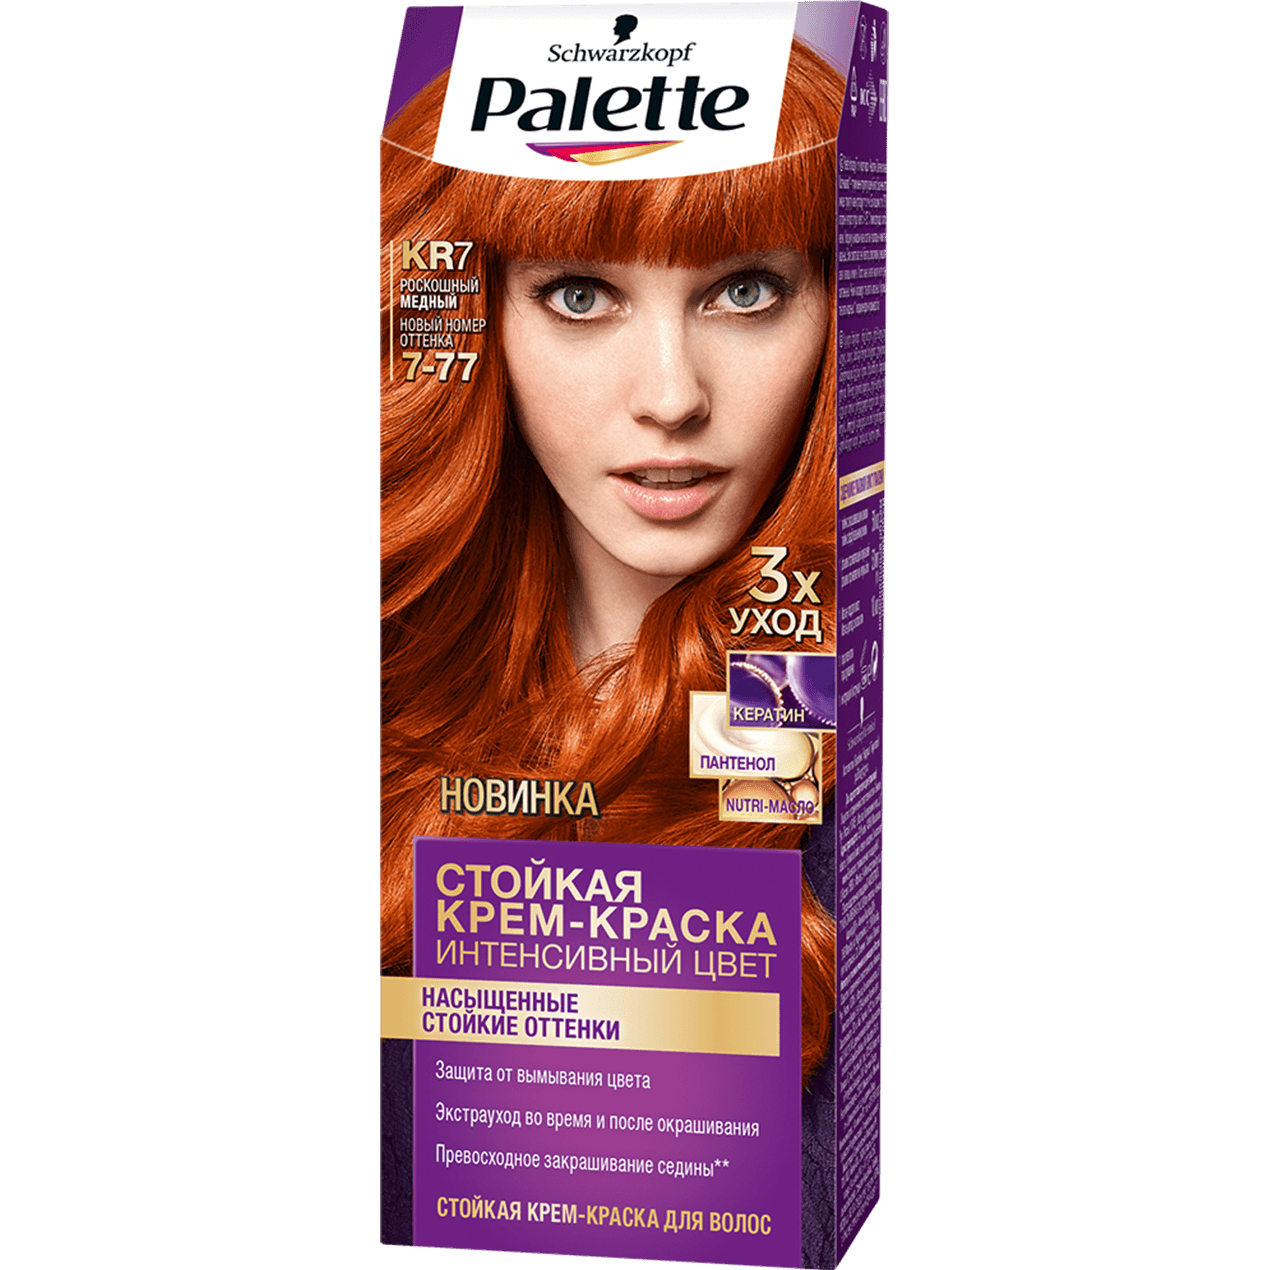 Крем-краска для волос Palette Интенсивный цвет 7-77, KR7 Роскошный медный 110 мл крем краска для волос rowena soft silk тон 3 3 горький шоколад